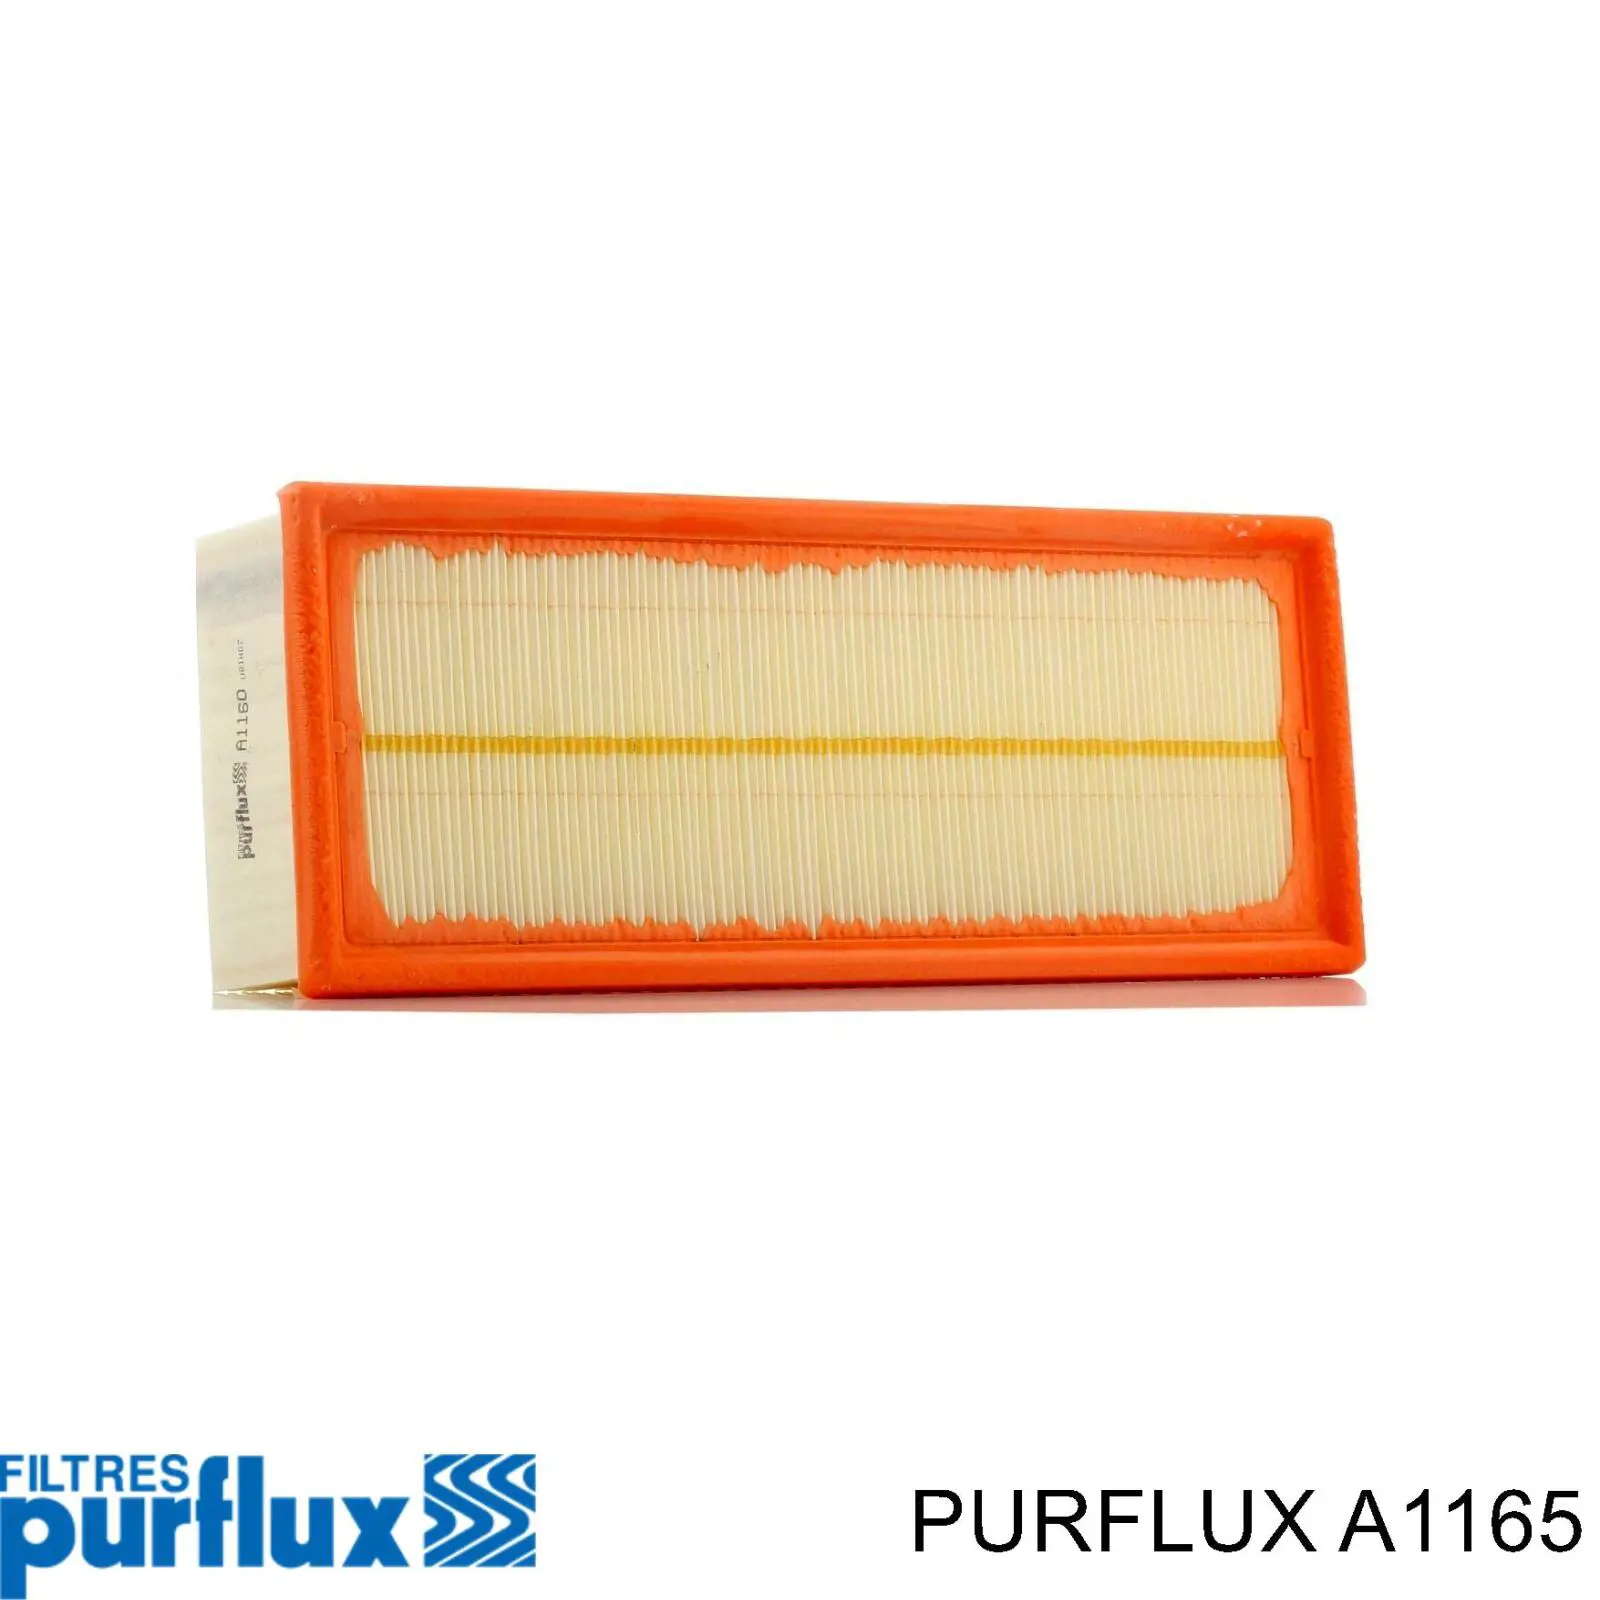 A1165 Purflux filtro de aire